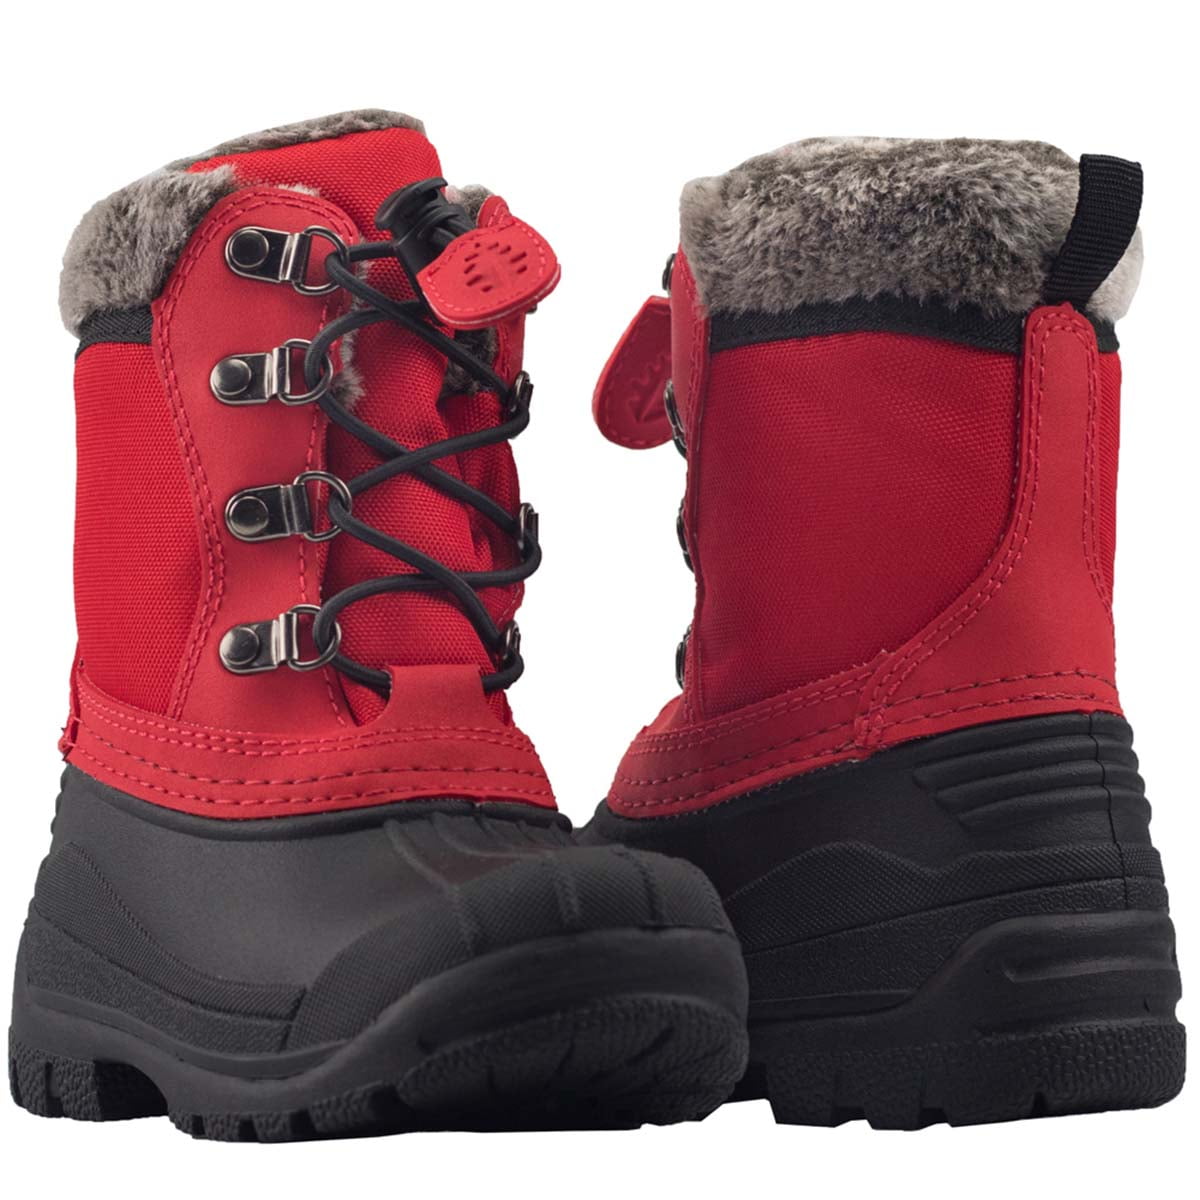 OAKI - Oakiwear Winter Snow Boots For 